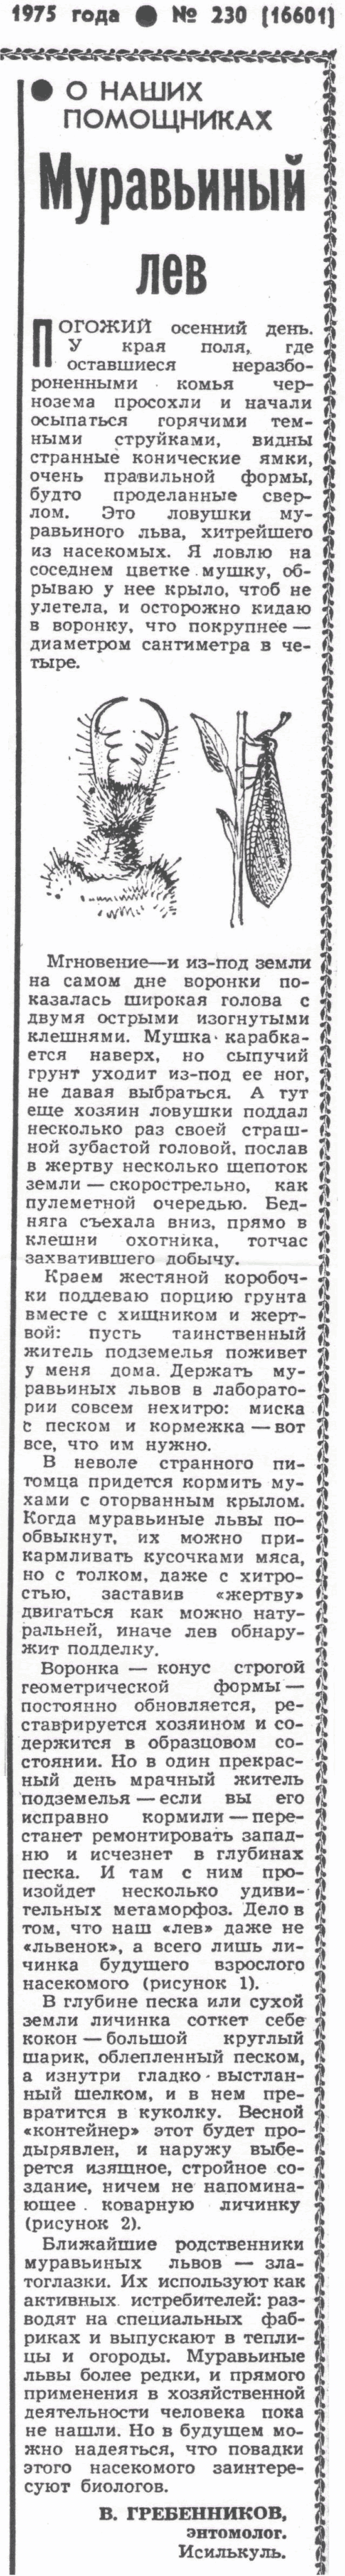 Муравьиный лев. В.С. Гребенников. Сельская жизнь, 01.10.1975.